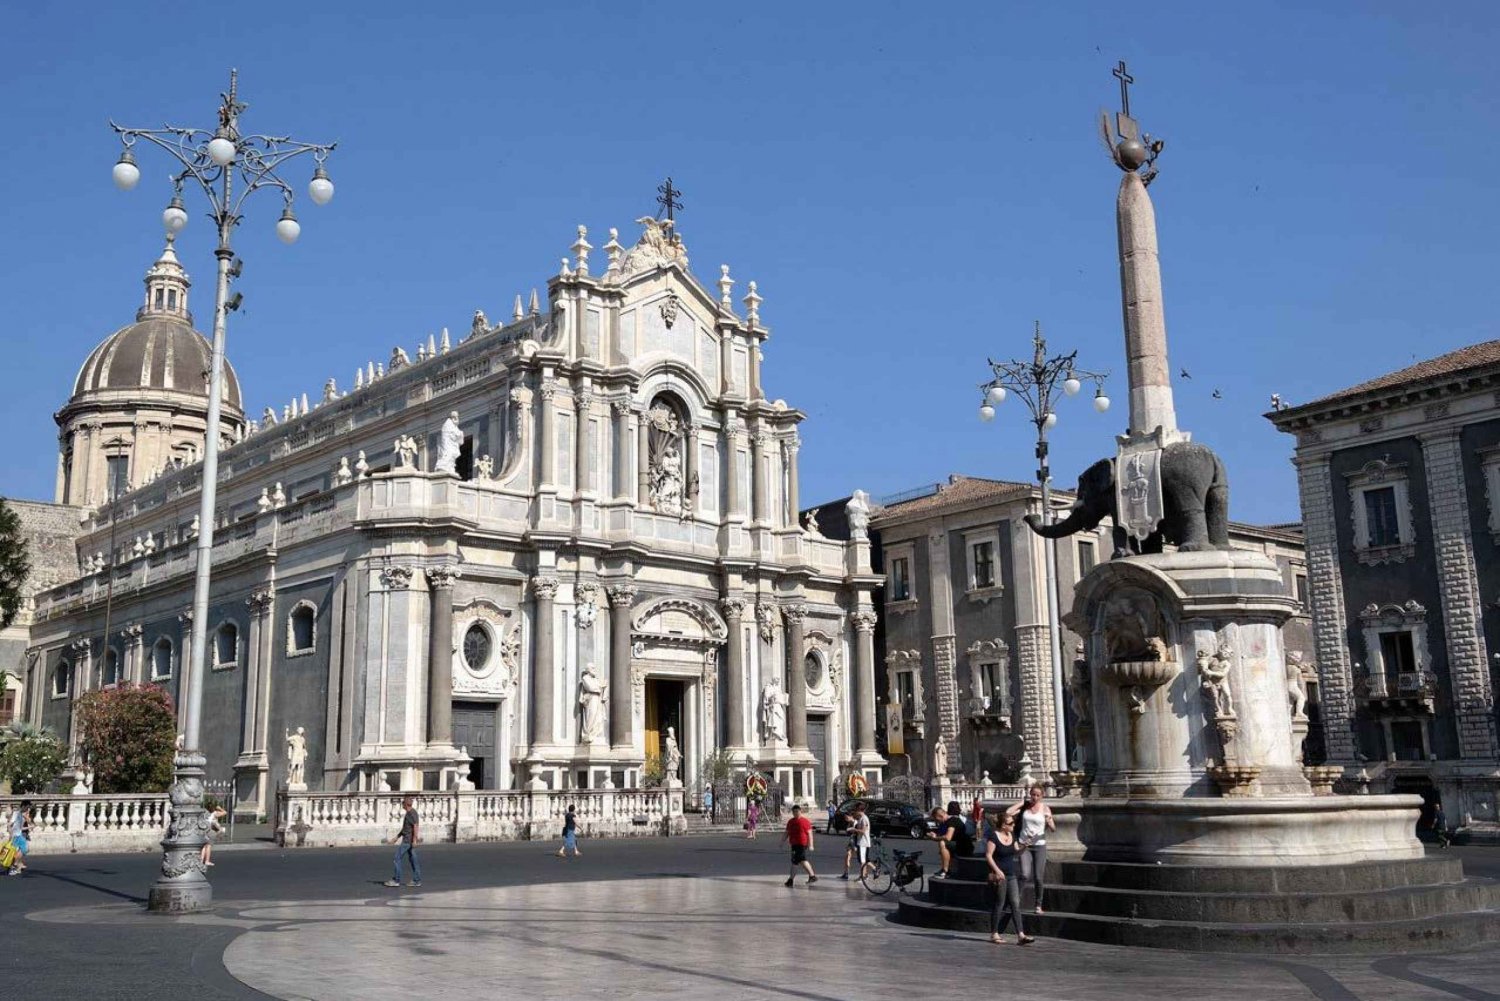 Catania: Byens højdepunkter - vandretur